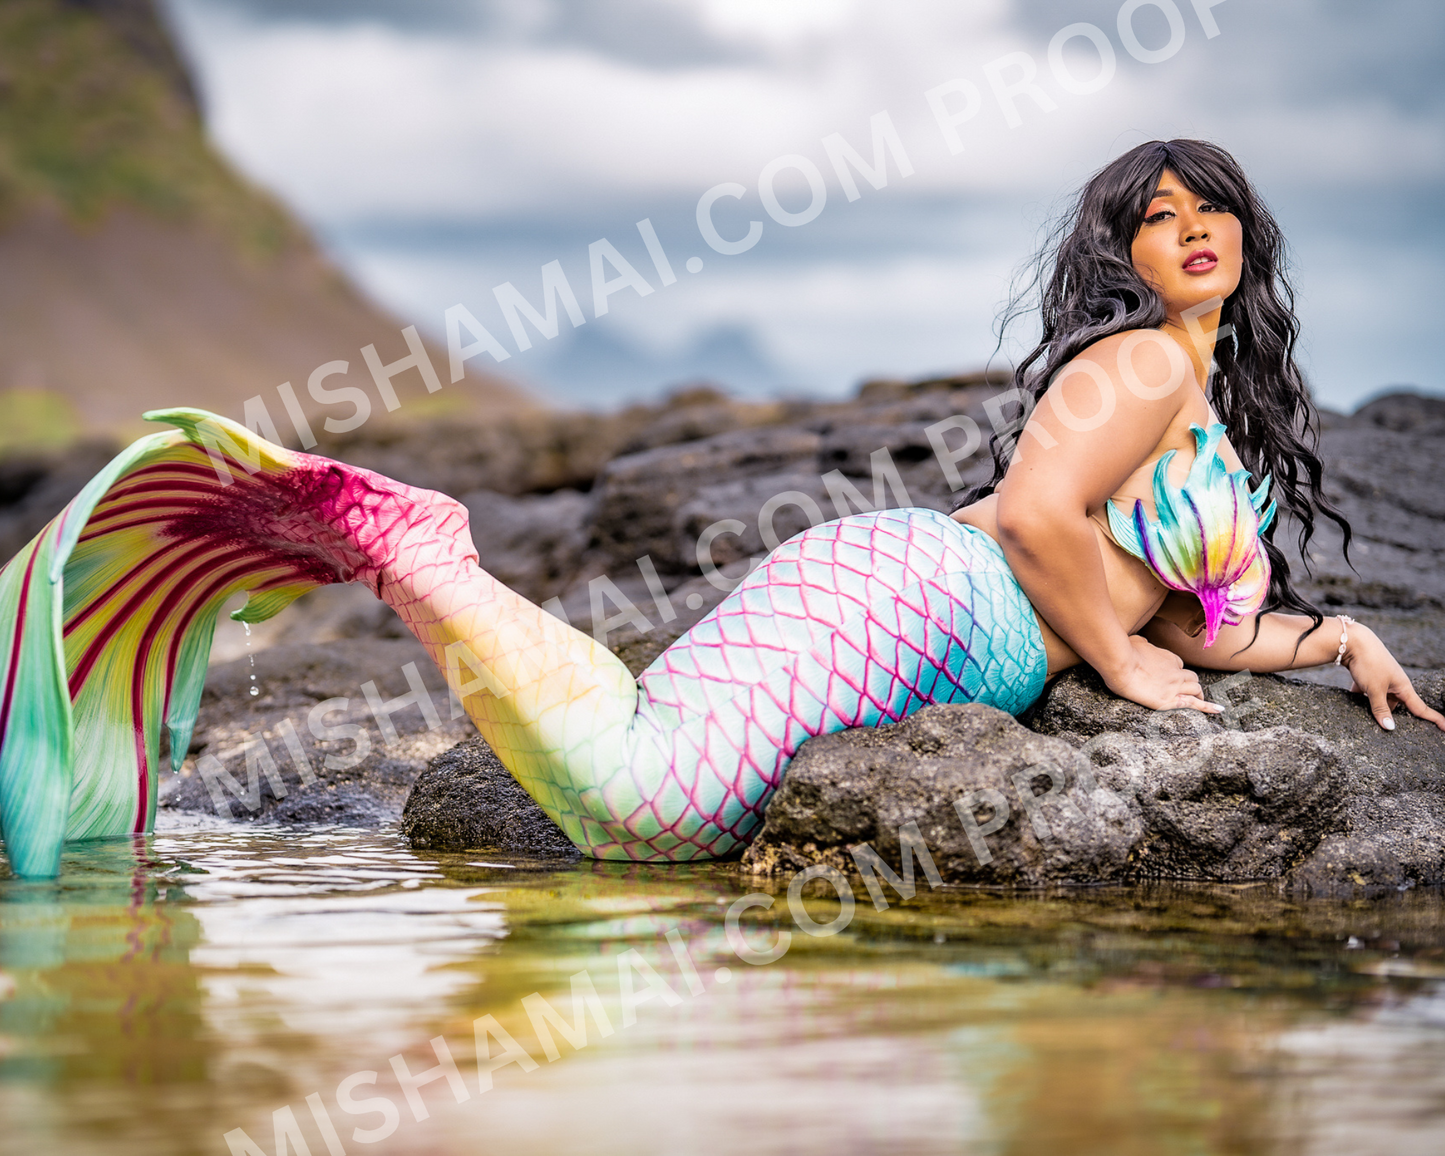 Rainbow Mermaid - 8" x 10" Signed Print